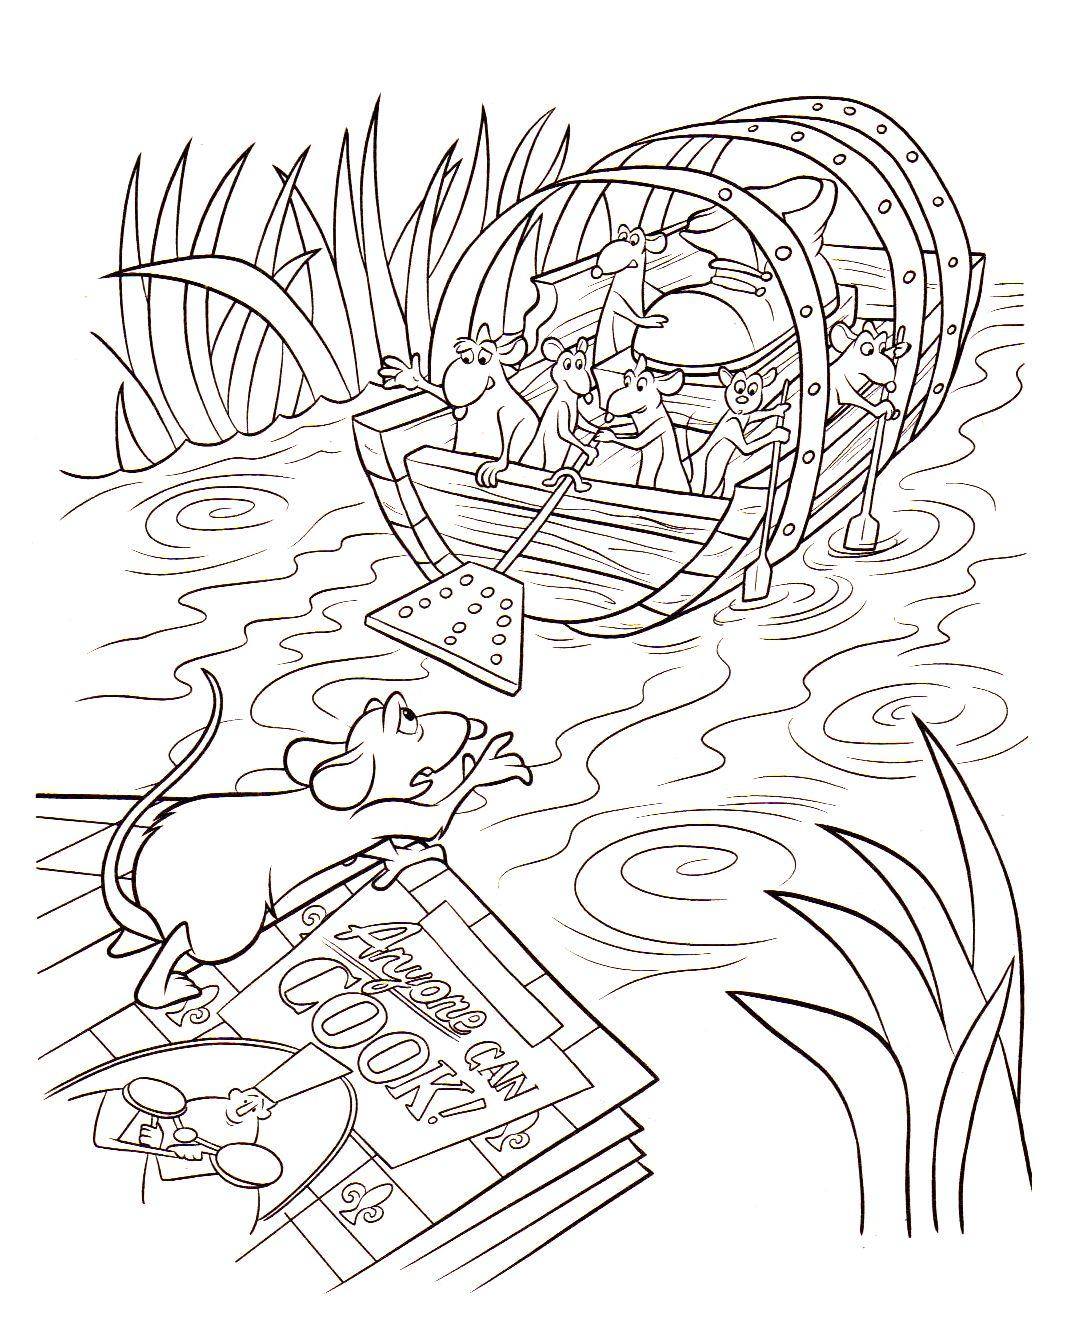 Scène à colorier tirée du début de Ratatouille, où Rémy et Emile sont en grand danger